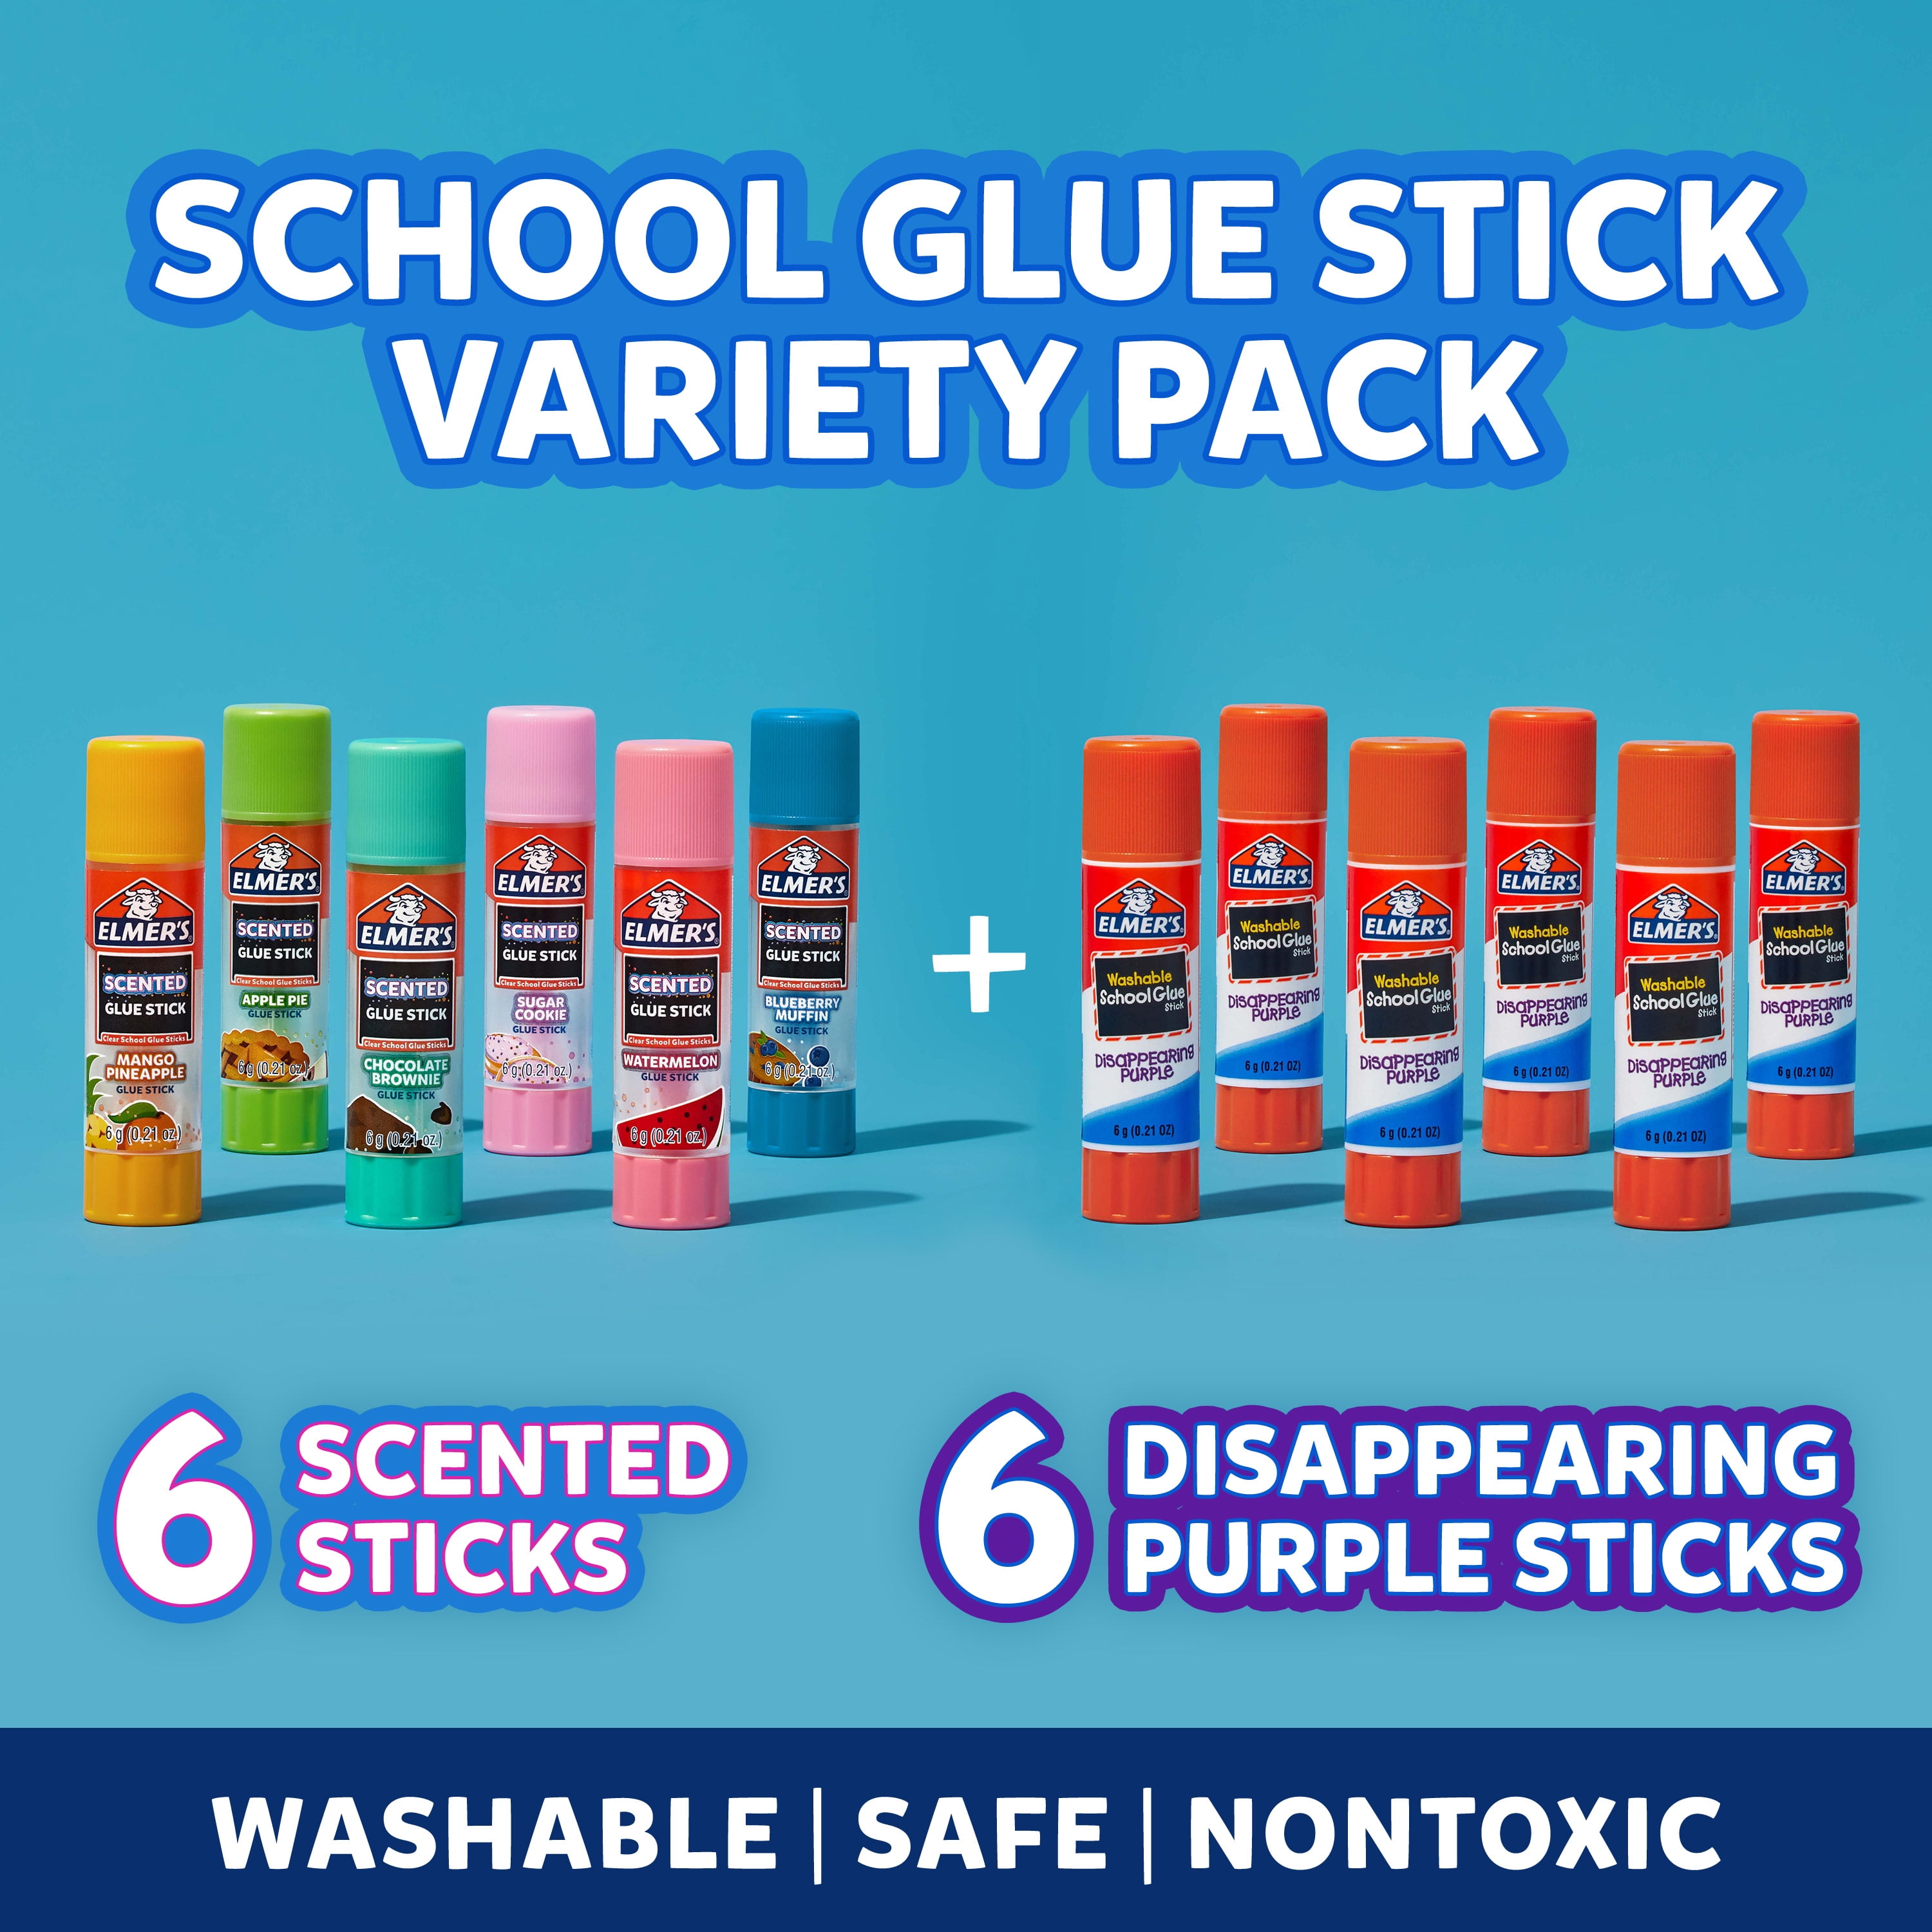 Elmer's® Clear Scented Glue Sticks, 4ct.